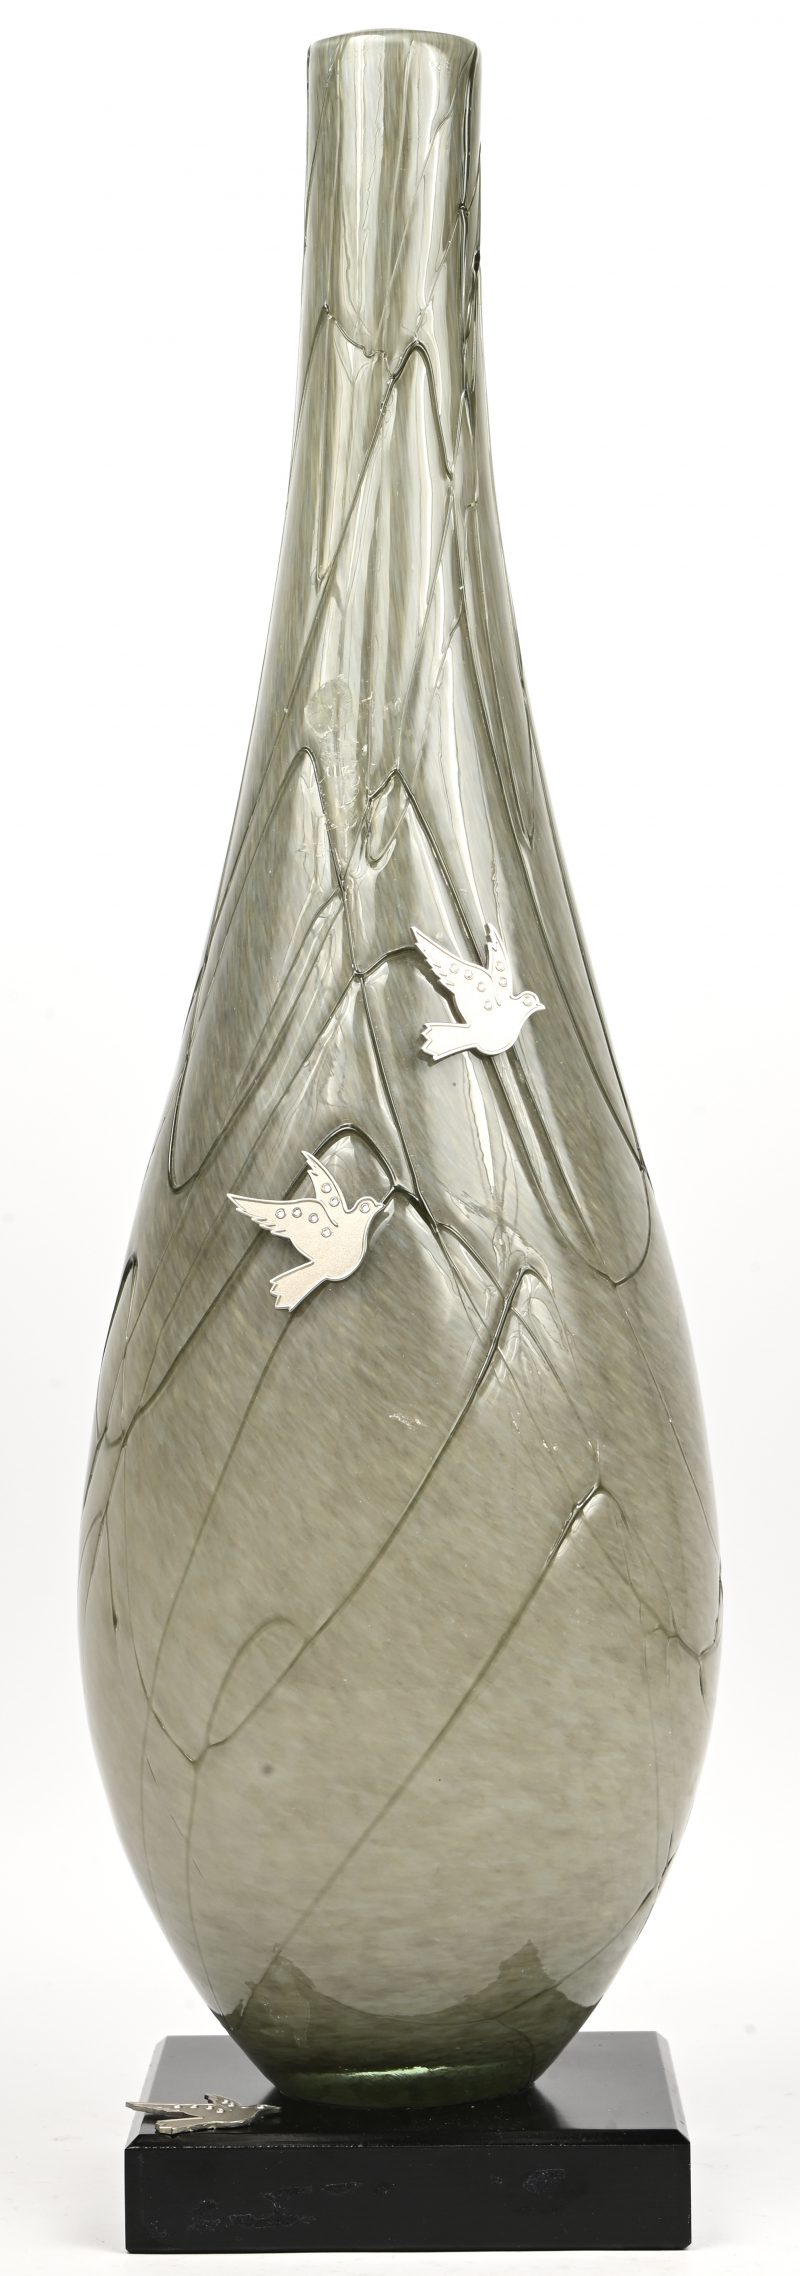 Een uit glaspasta meerkleurige vaas met gesculpteerde lijnen op houten voet. Enkele plaquettes van duifjes op bevestigd.